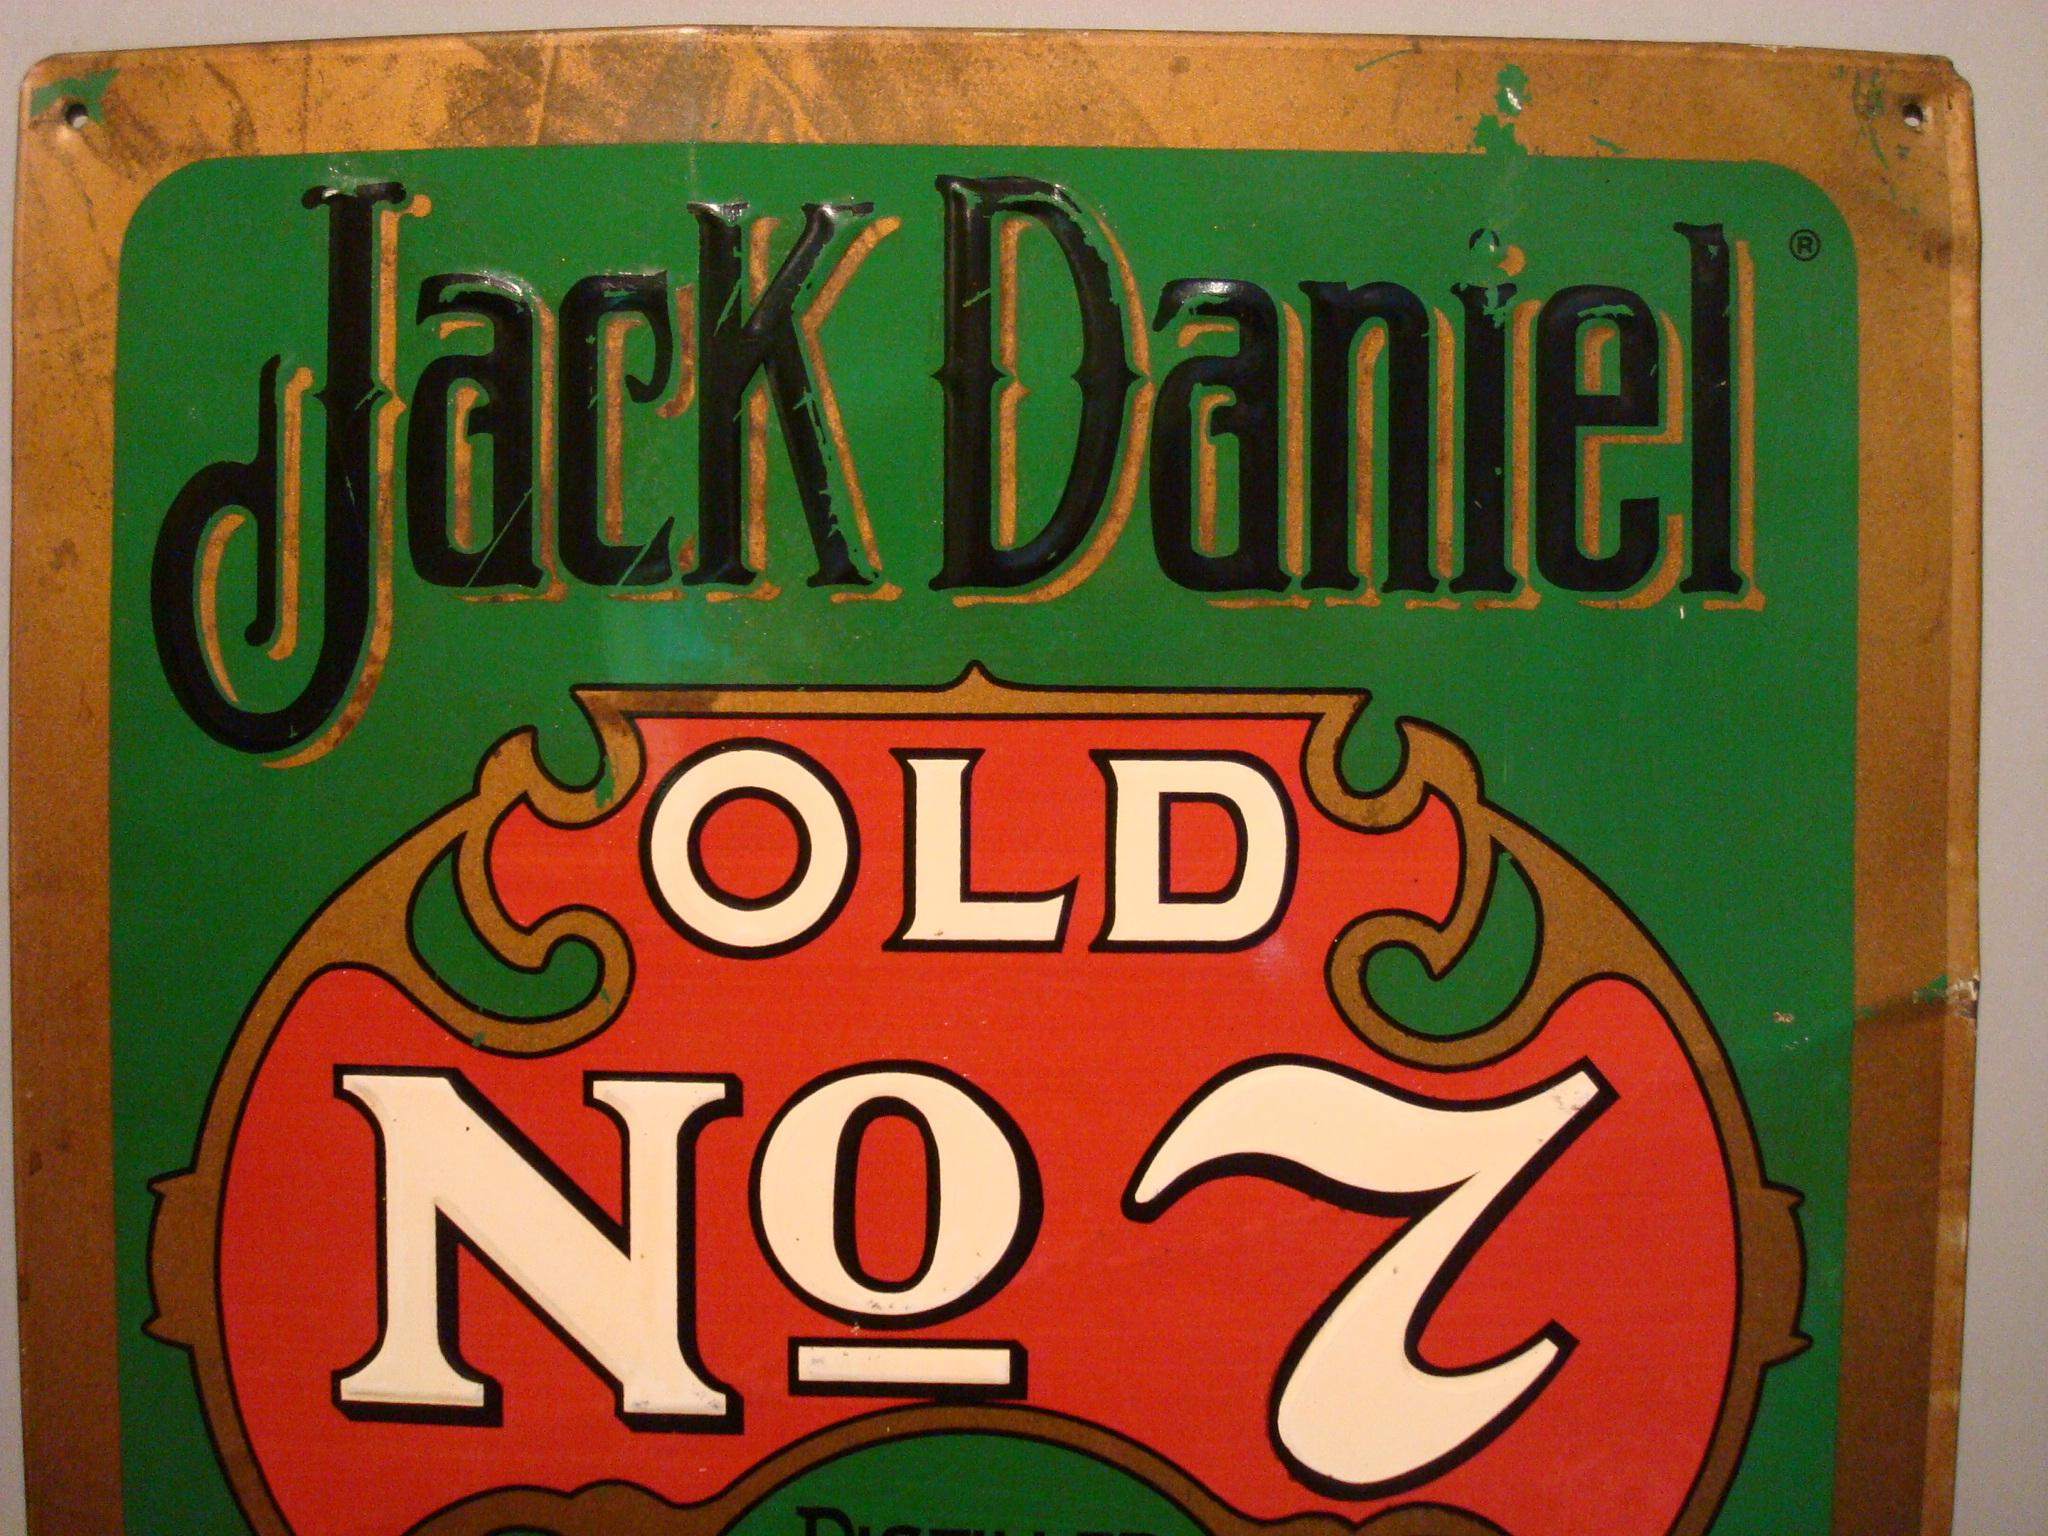 Jack Daniels old number 7 whiskey tin advertising bar sign / 1950s midcentury.
Parfait pour décorer un bar.